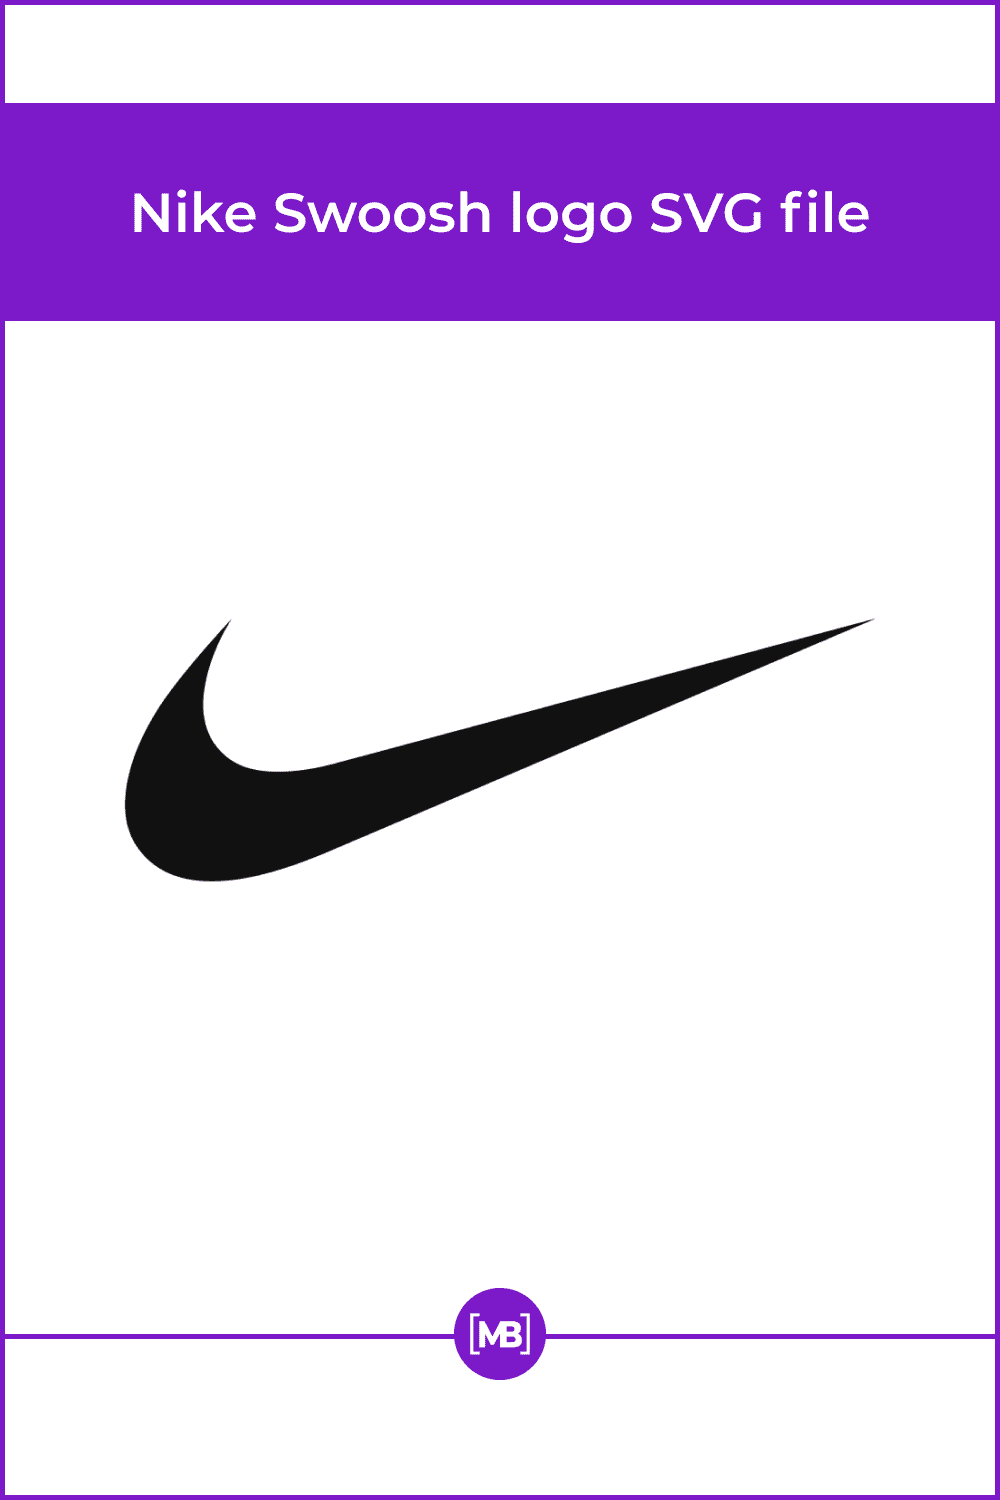 Nike Swoosh logo SVG file.